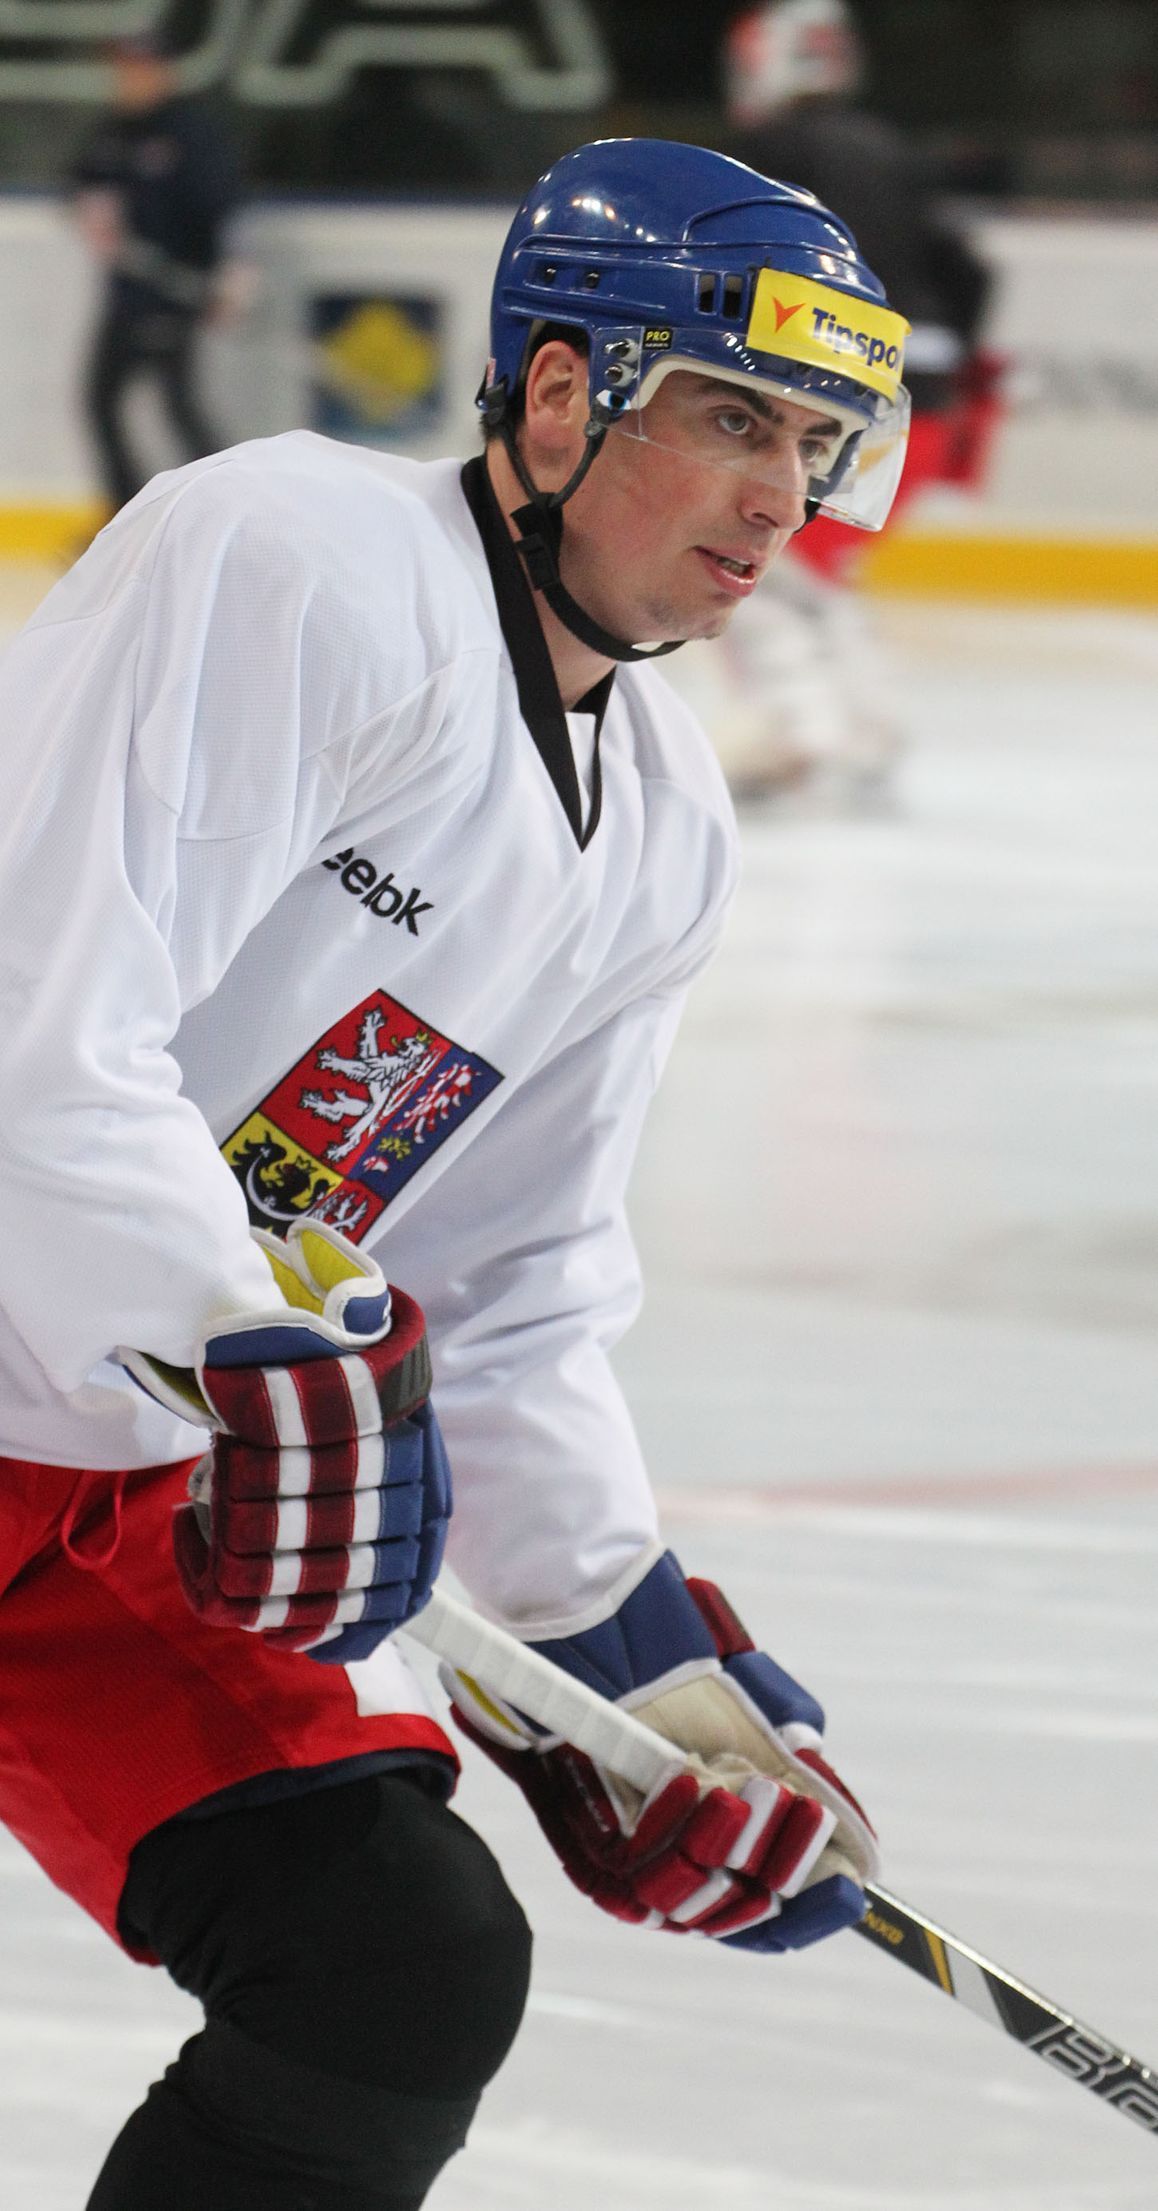 Česká hokejová reprezentace (Karjala Cup 2013) - Tomáš Kaberle